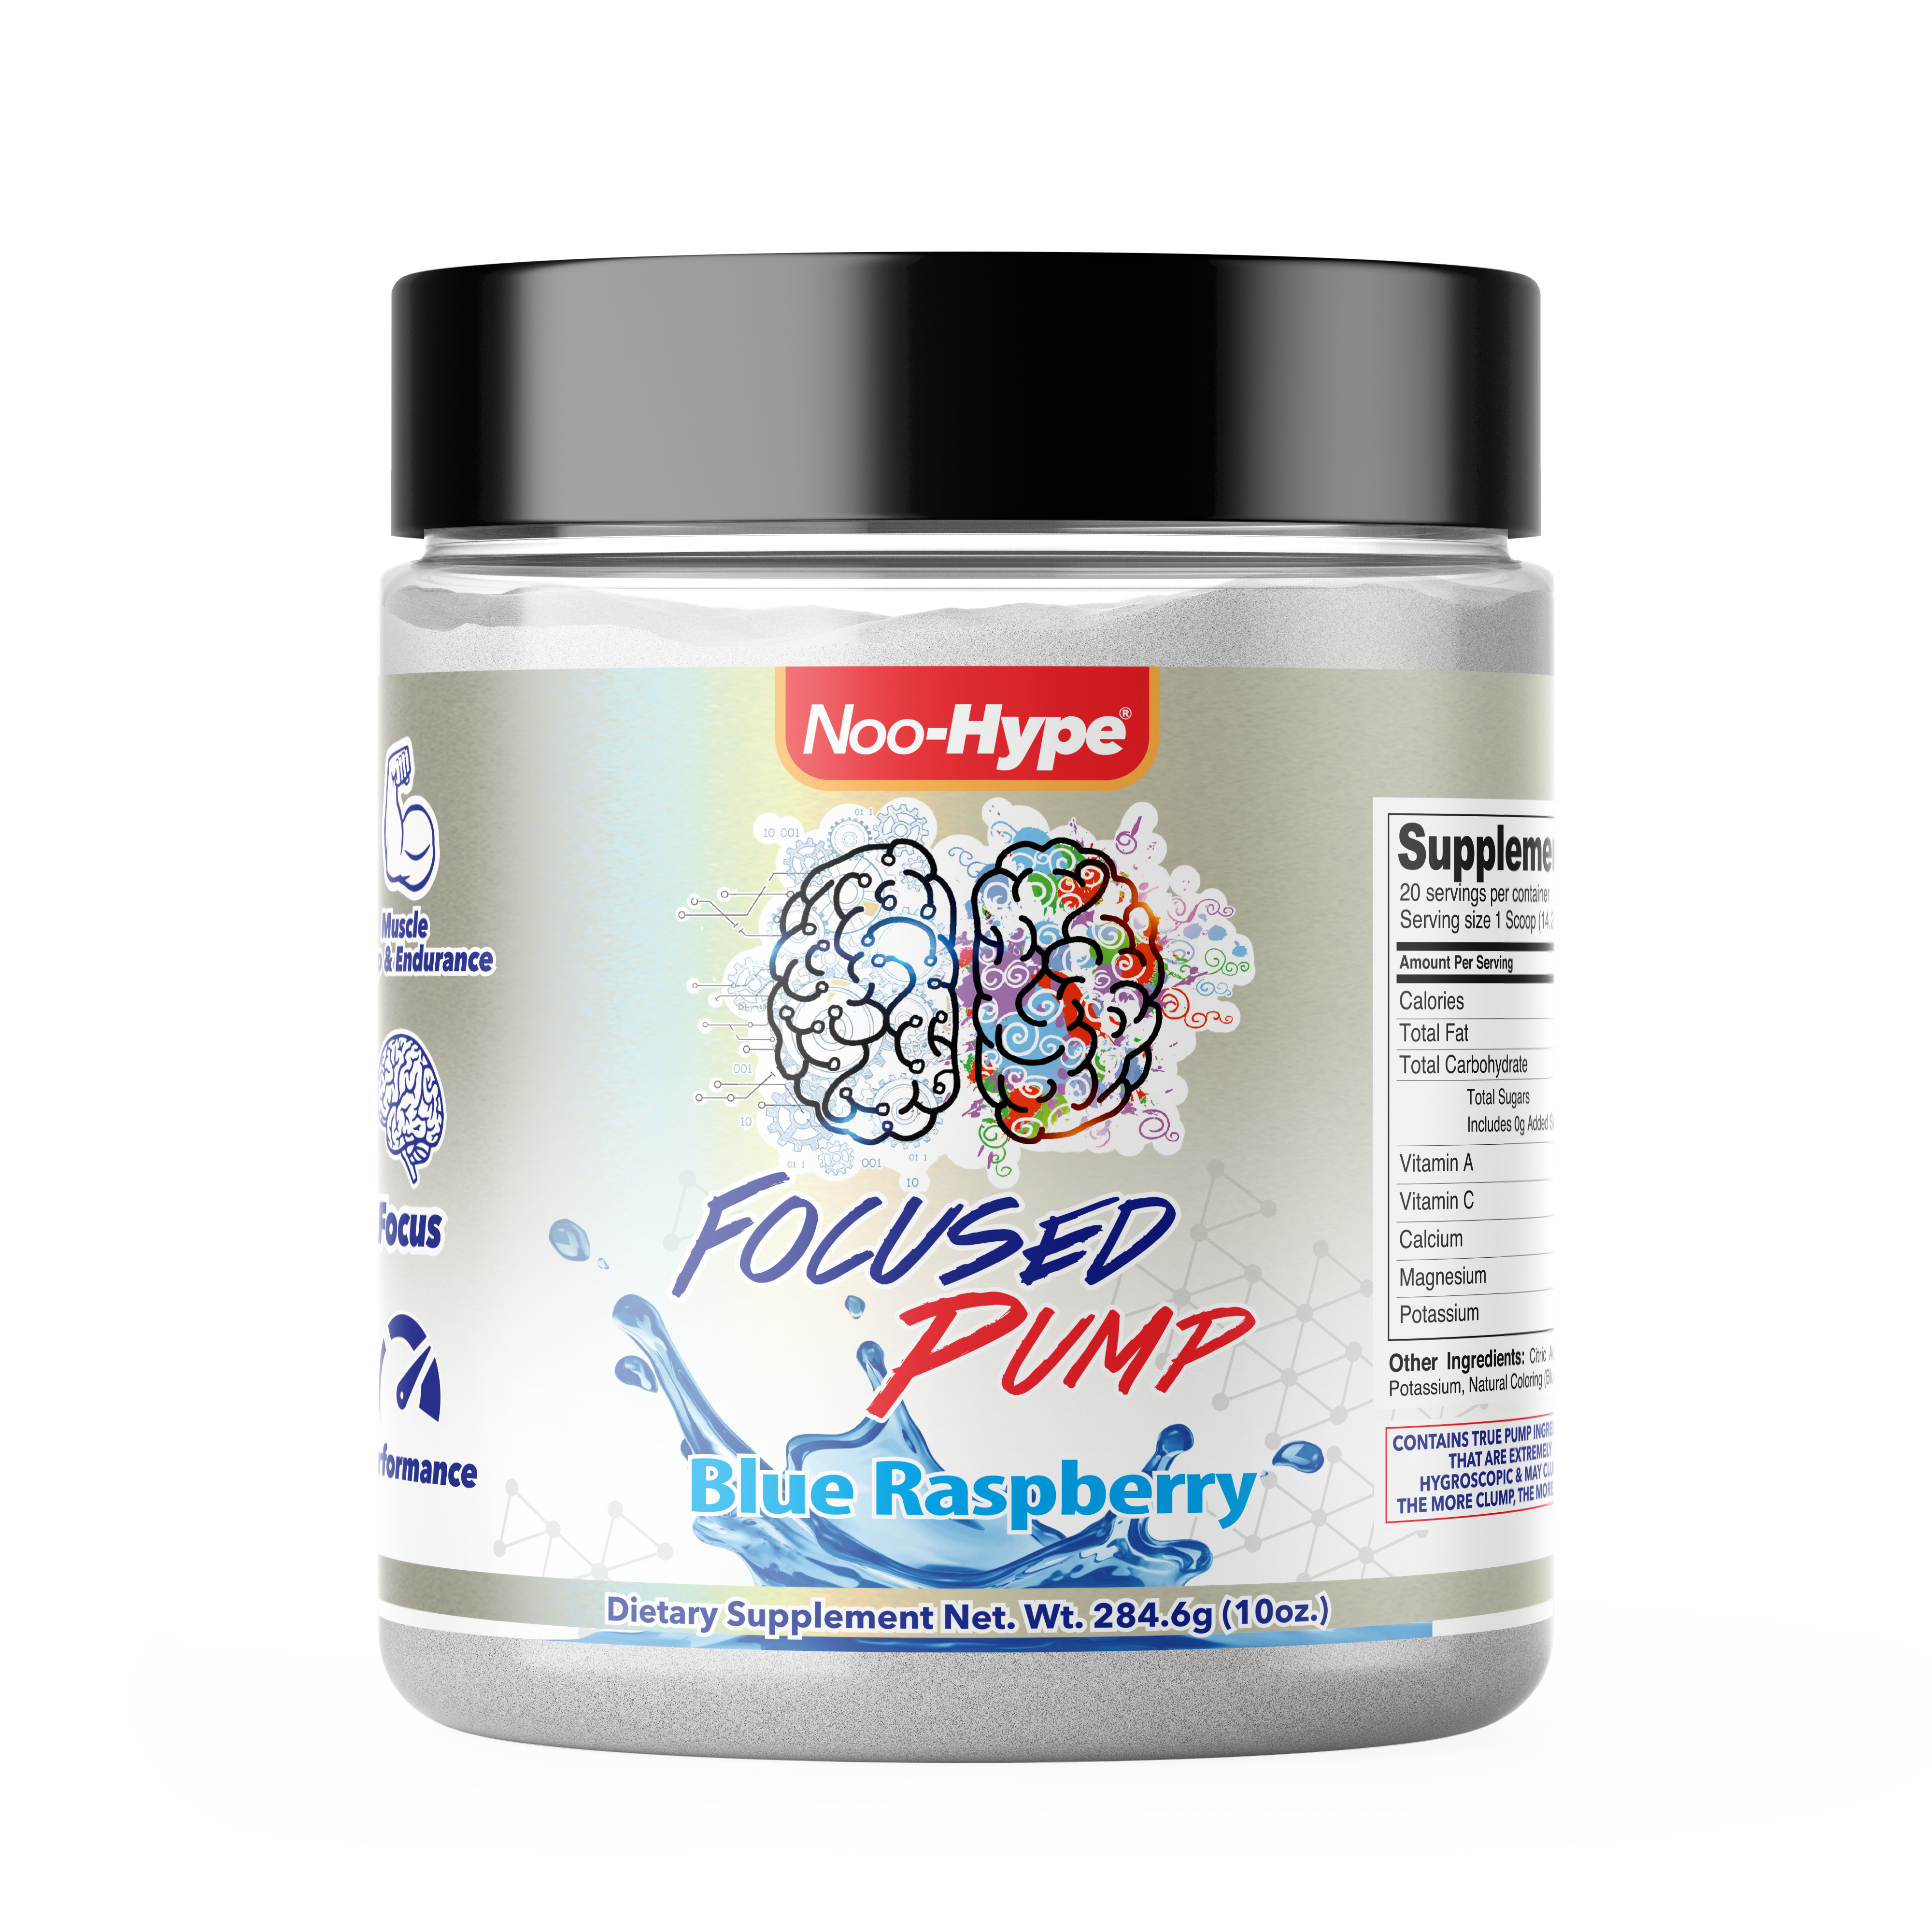 Noo-HYPE Focused Pump, 20 serving Blue Raspberry flavor, Non Stimulant nootropic pre workout powder